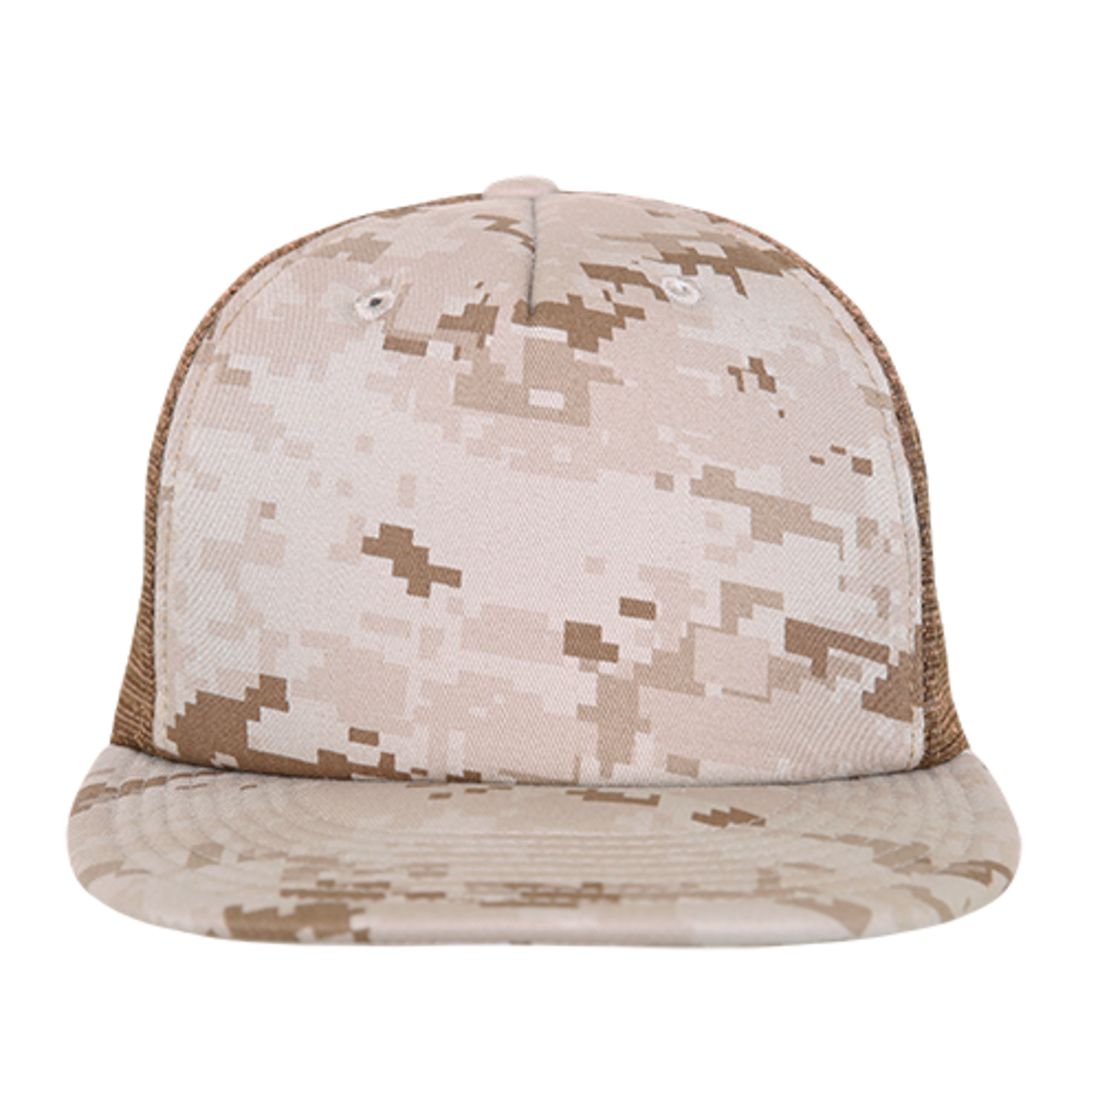 Decky 254 Camouflage Foam Mesh Trucker Hats 5 Panel Flat Bill Snapback Caps Wholesale